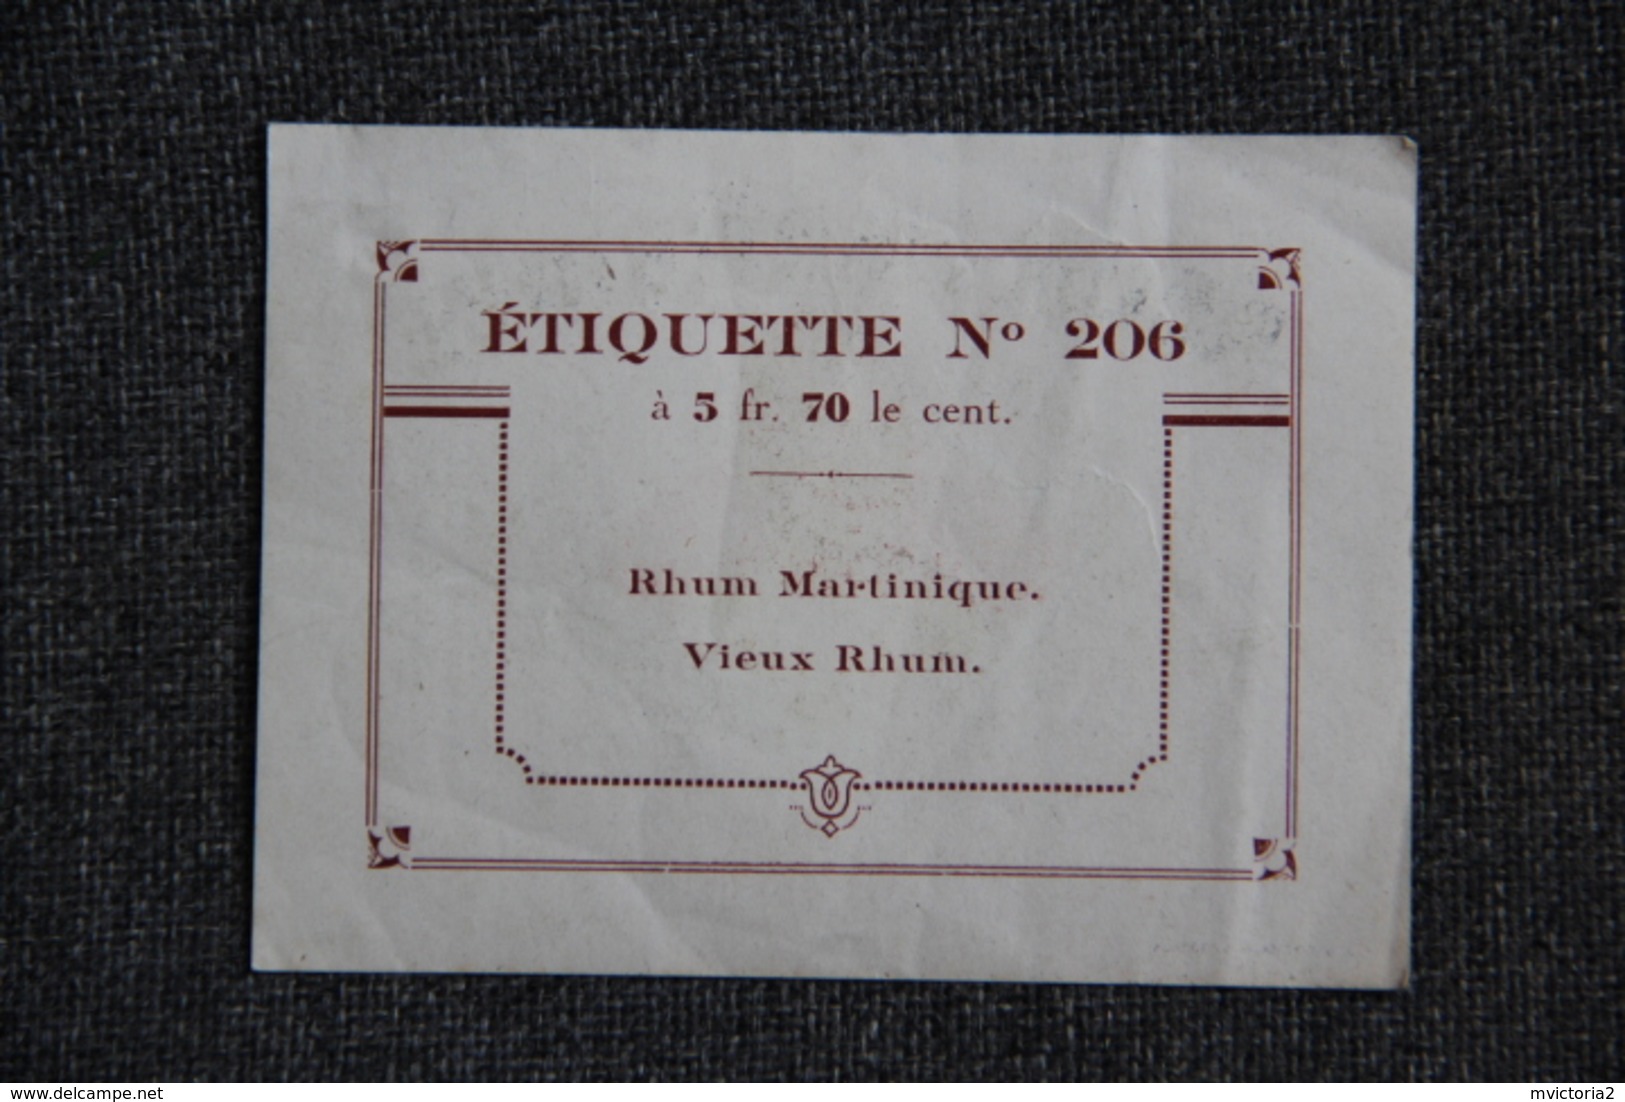 Etiquette - RHUM MARTINIQUE, Vieux Rhum. - Rhum